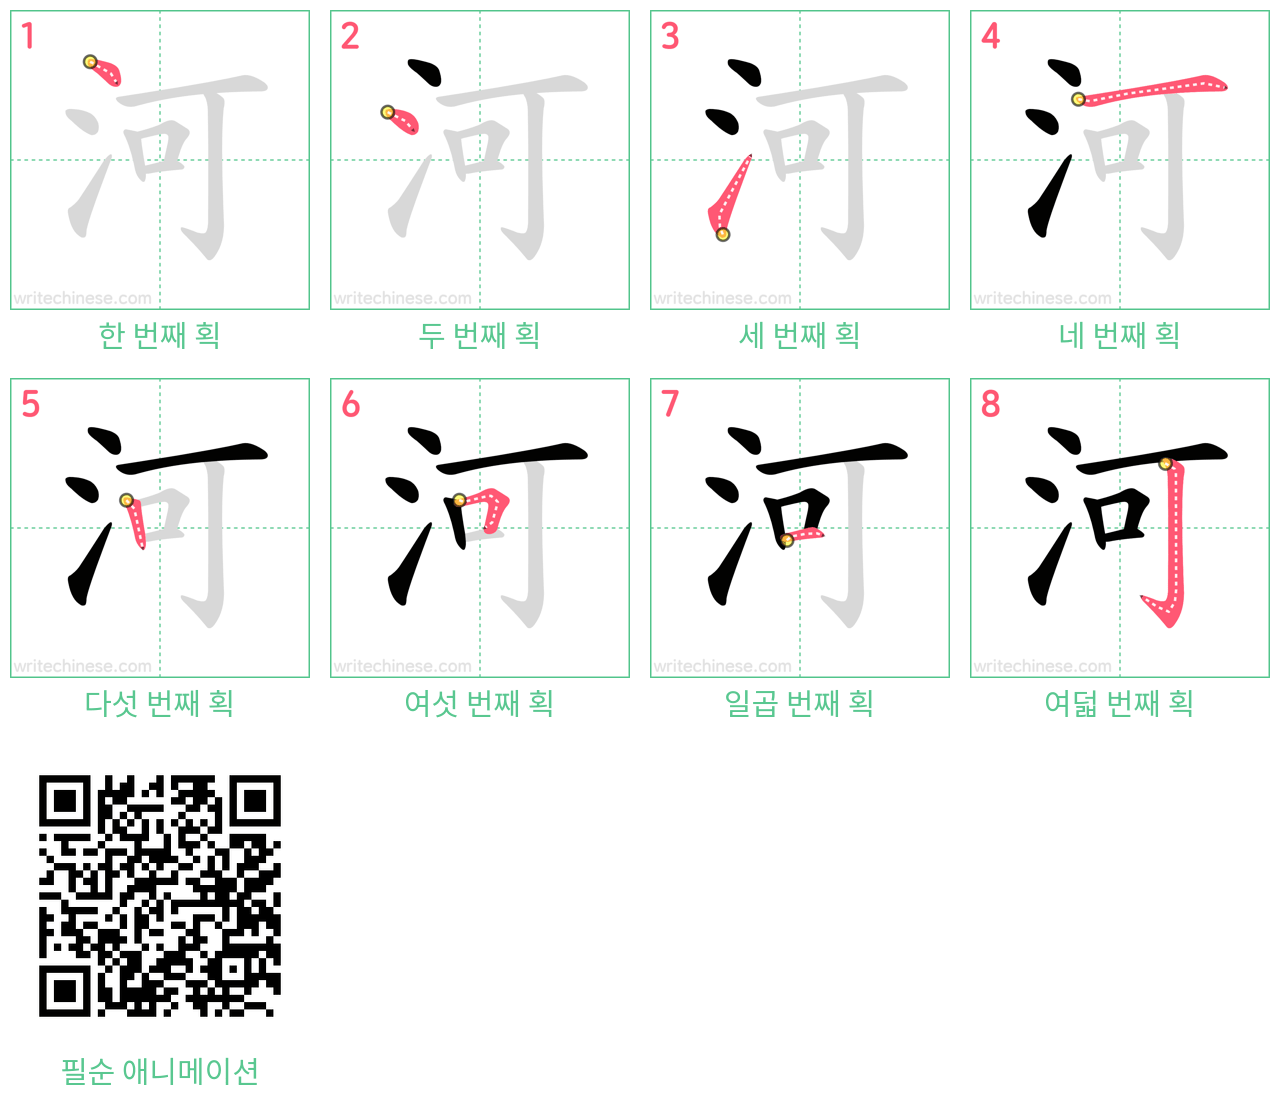 河 step-by-step stroke order diagrams